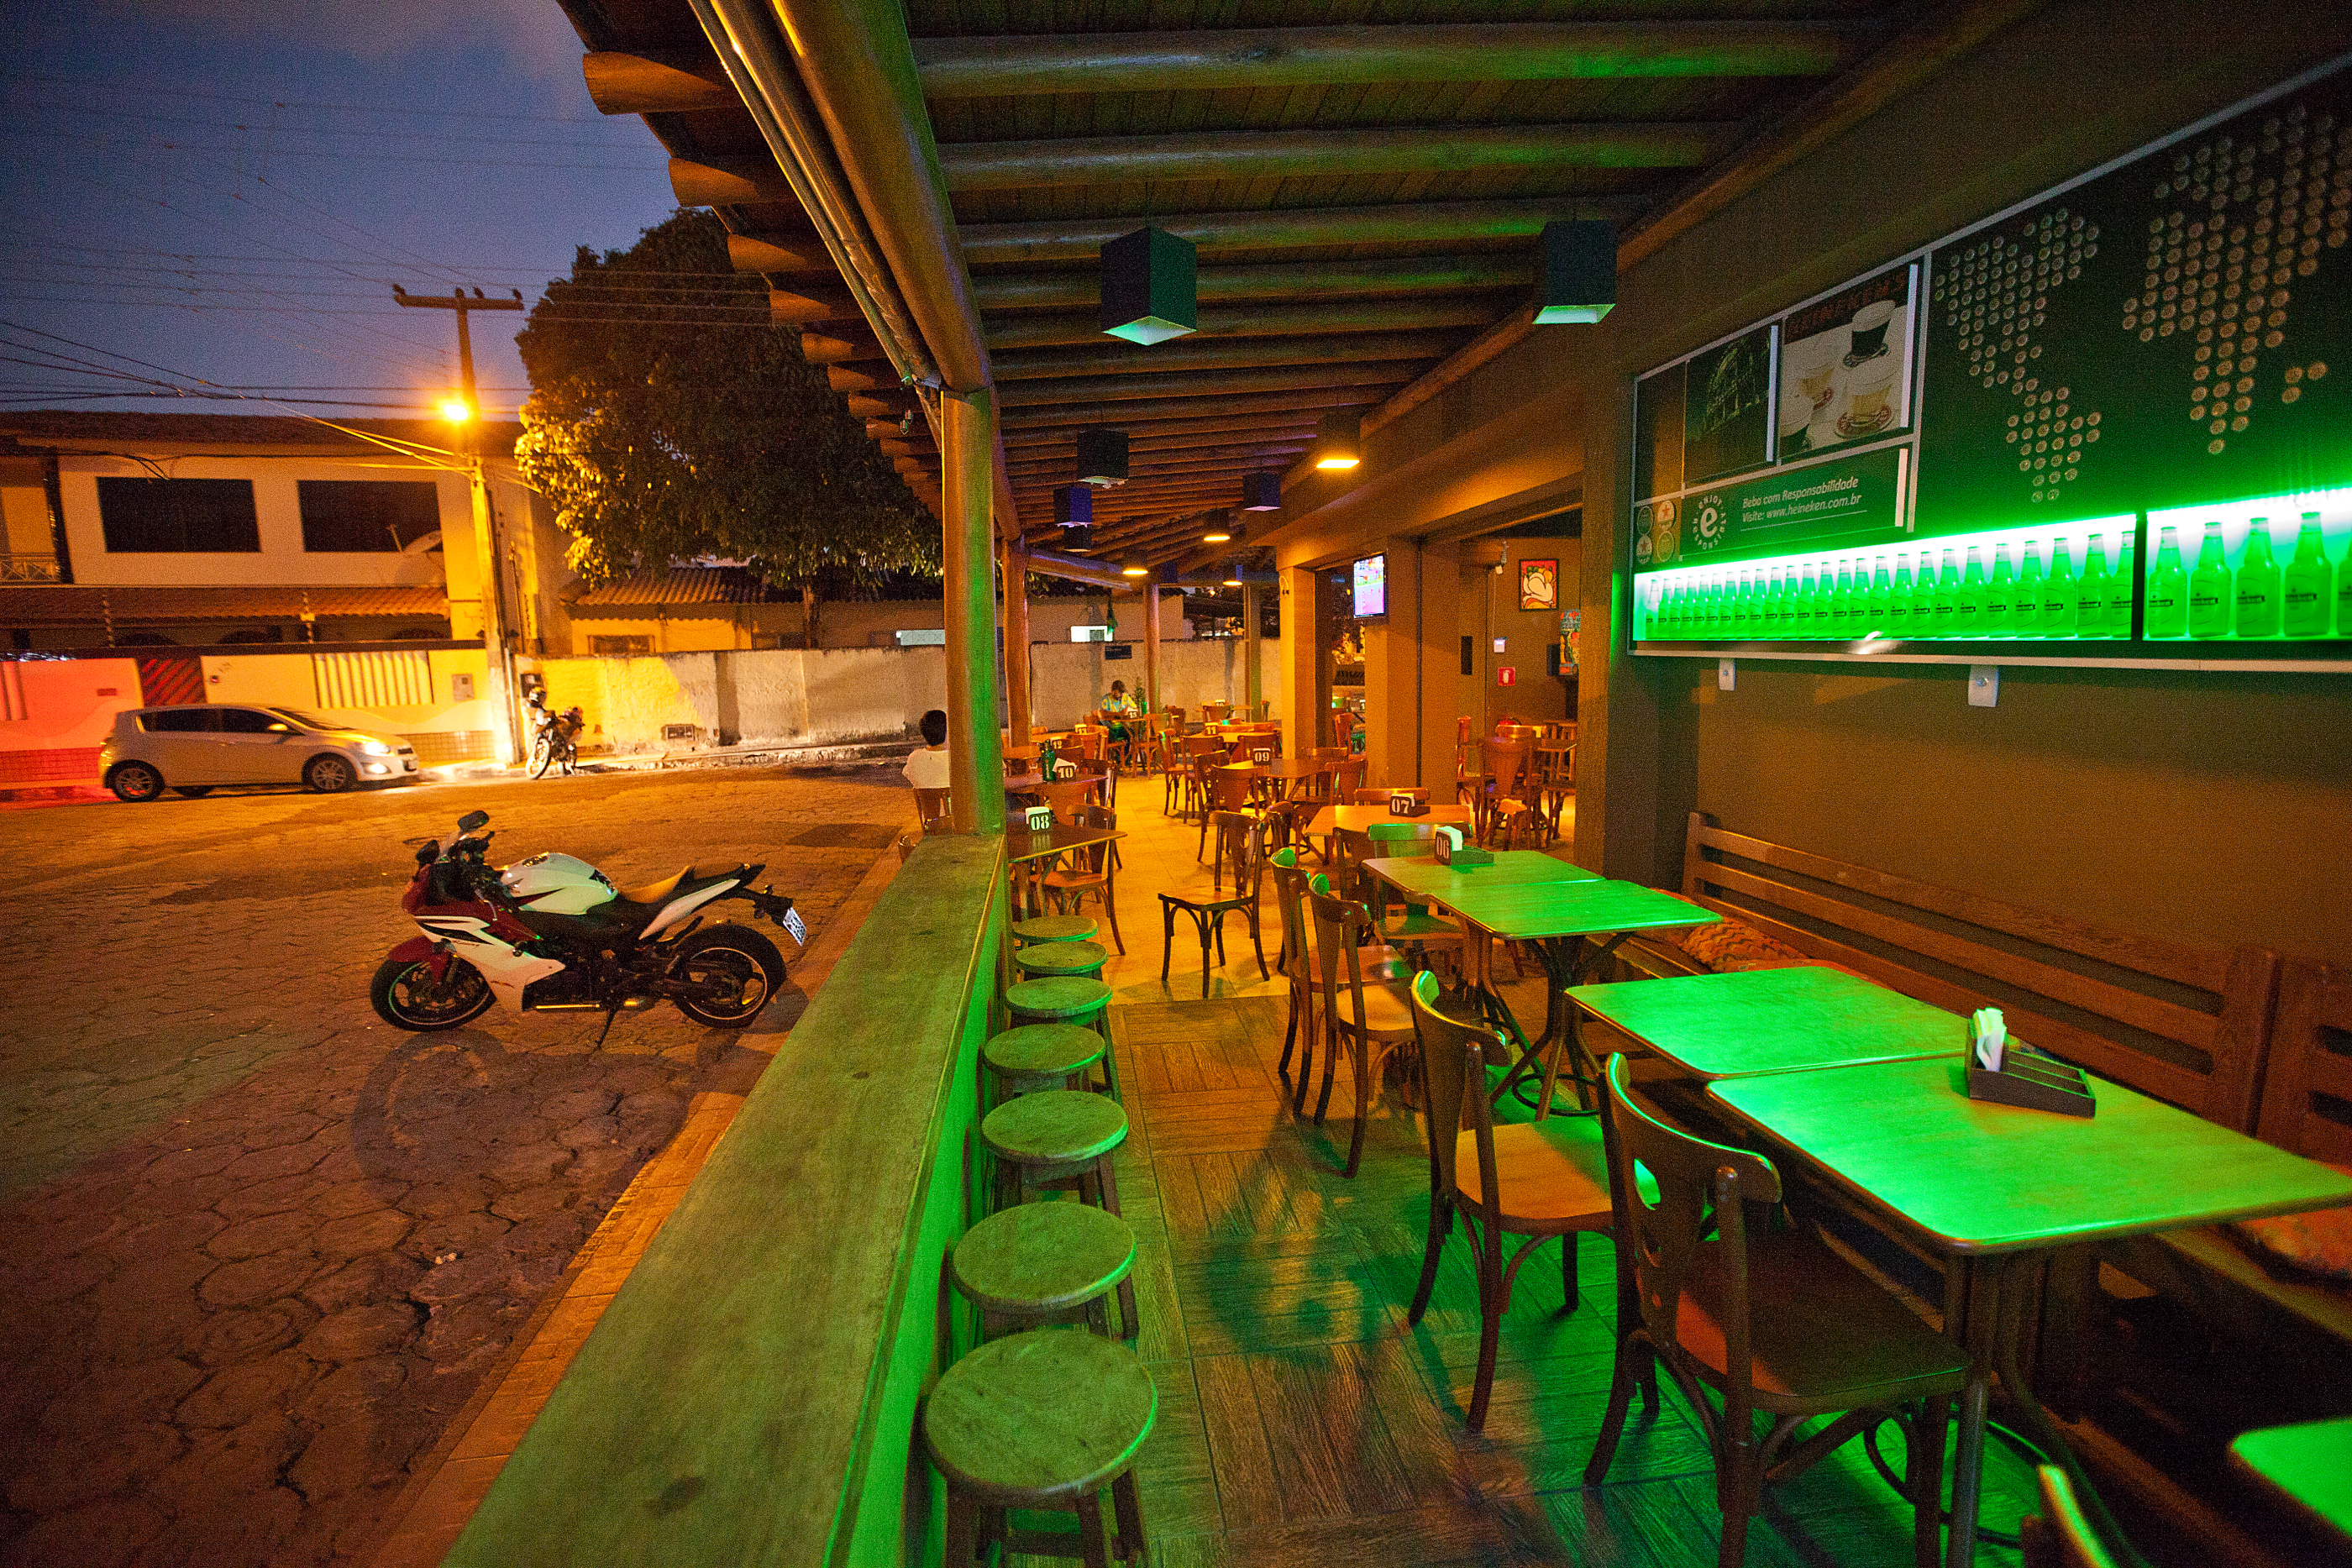 Bares em Aracaju, Aracaju, fotos de Aracaju, restaurantes em Aracaju, Sergipe, Márcio Dantas, Lugar Perfeito